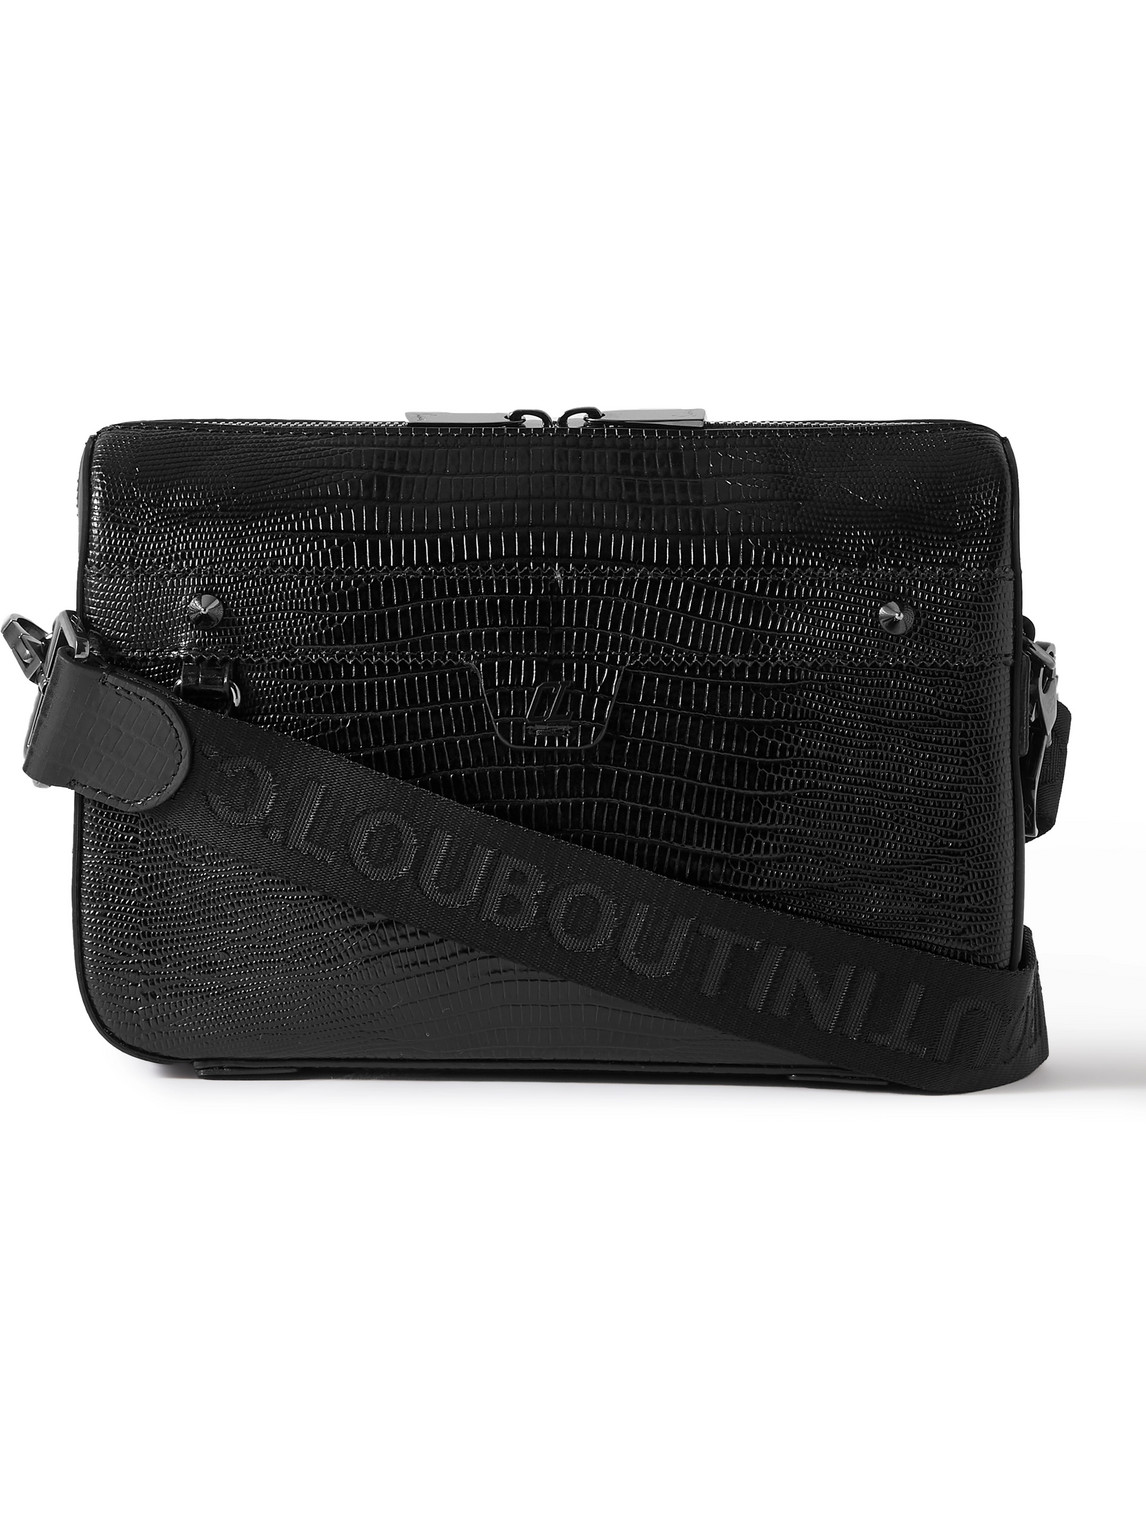 Ruisbuddy Studded Rubber-Trimmed Full-Grain Leather Messenger Bag